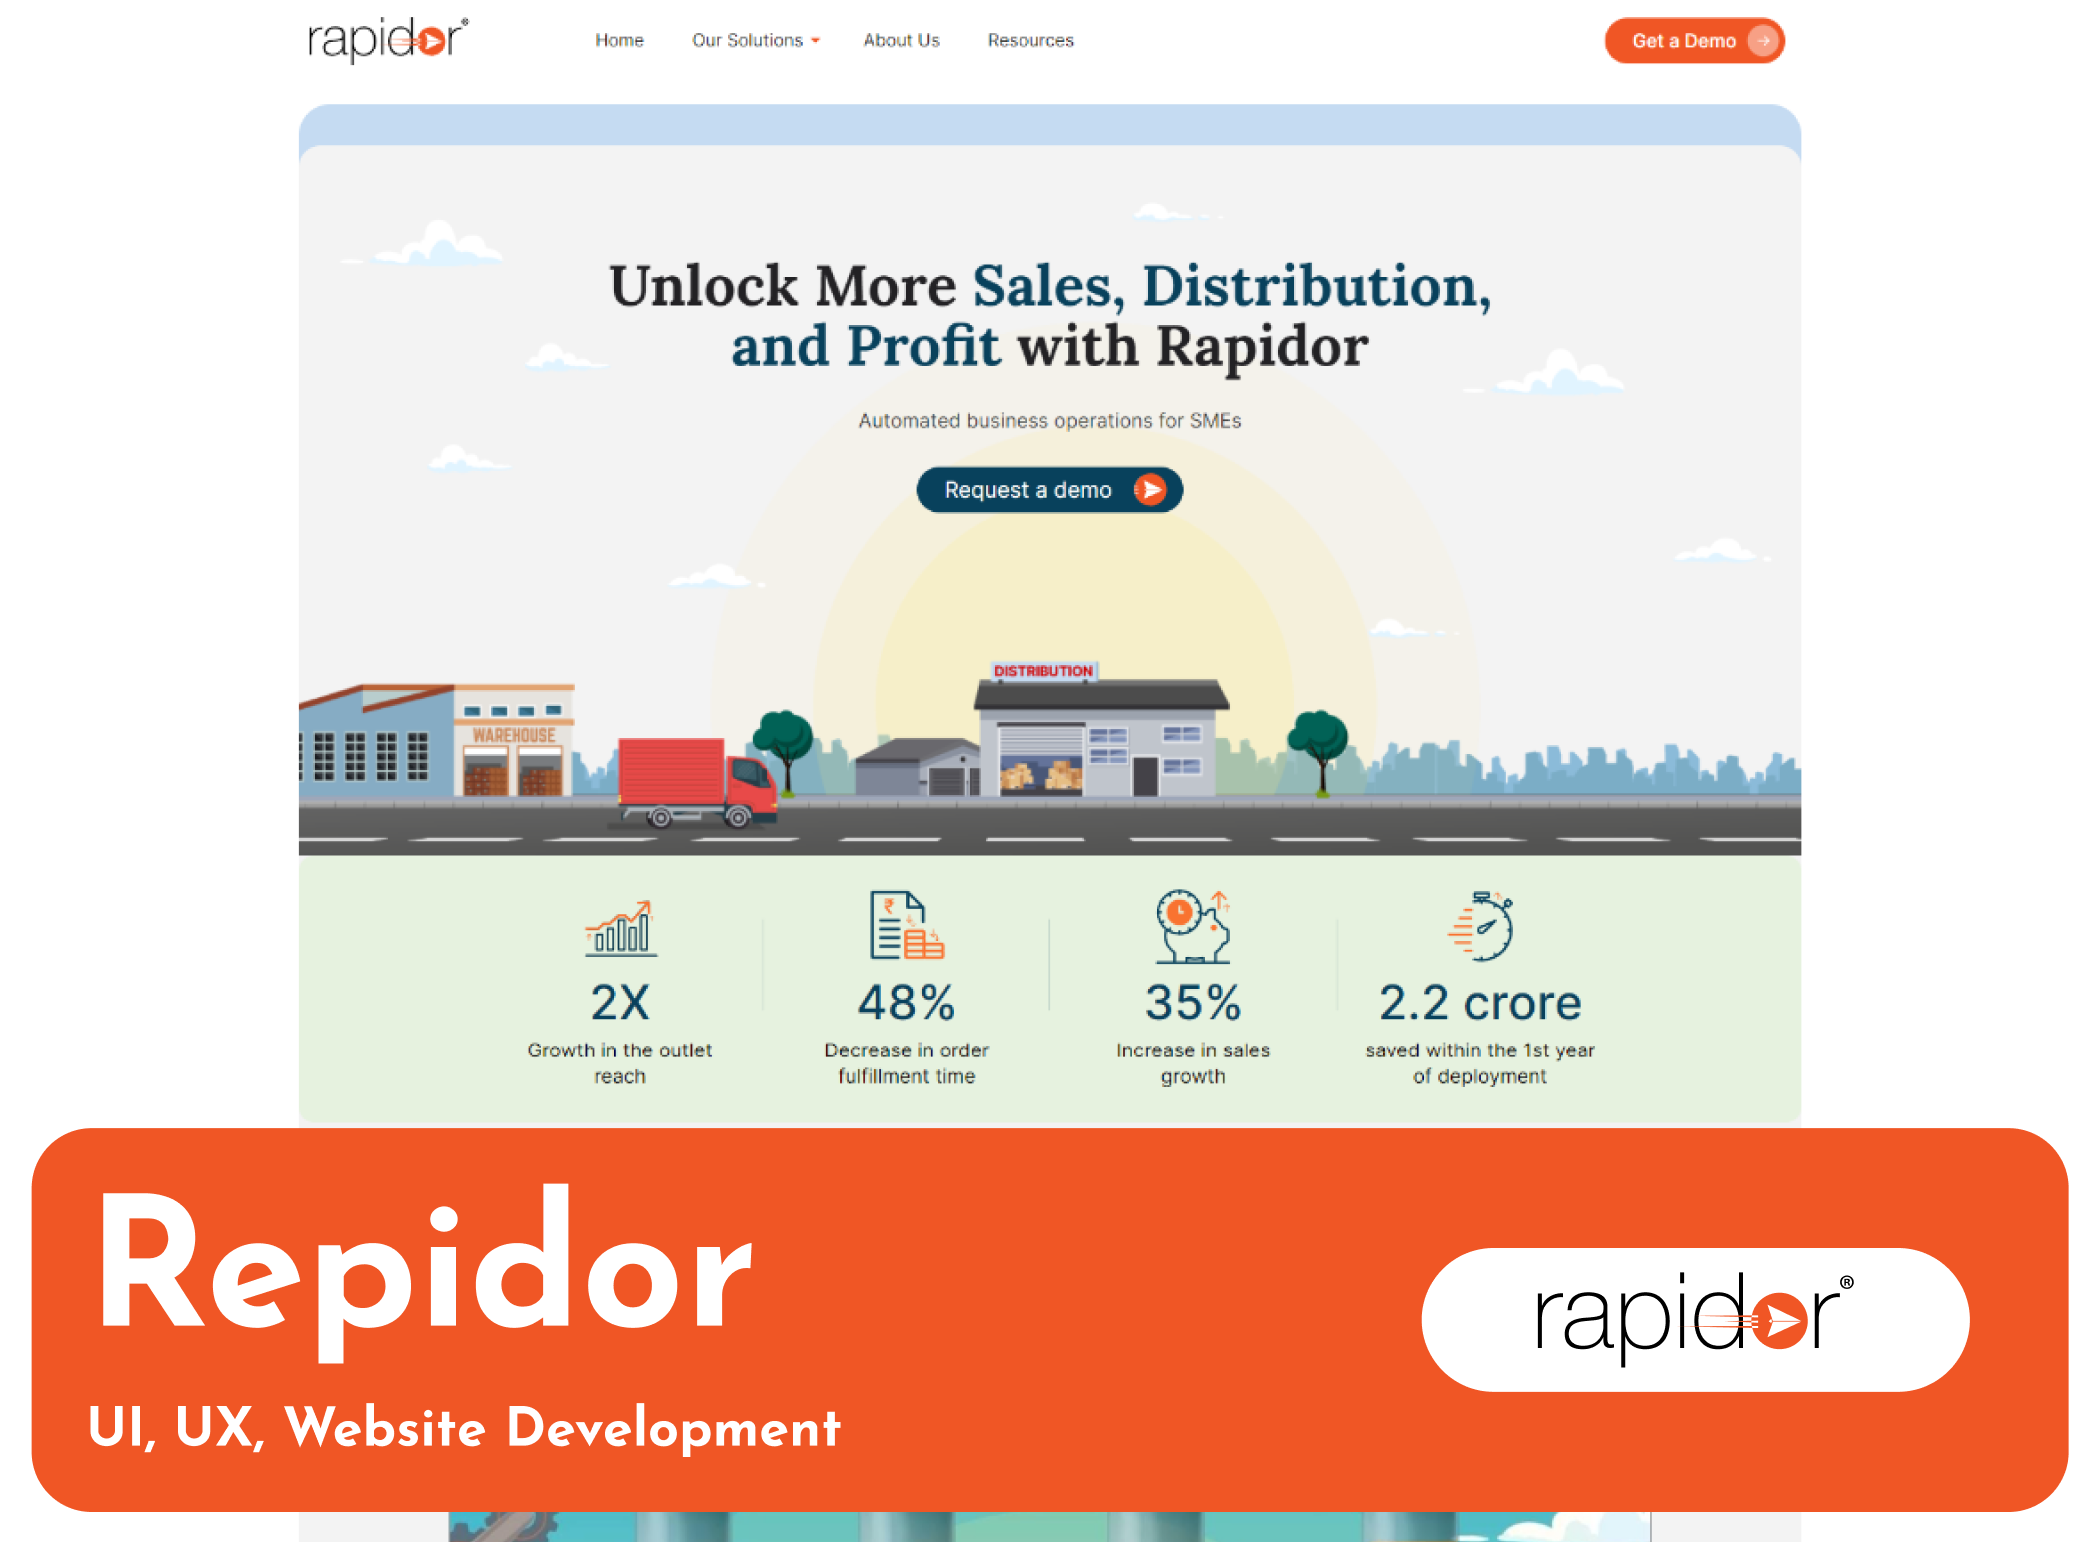 Rapidor website design